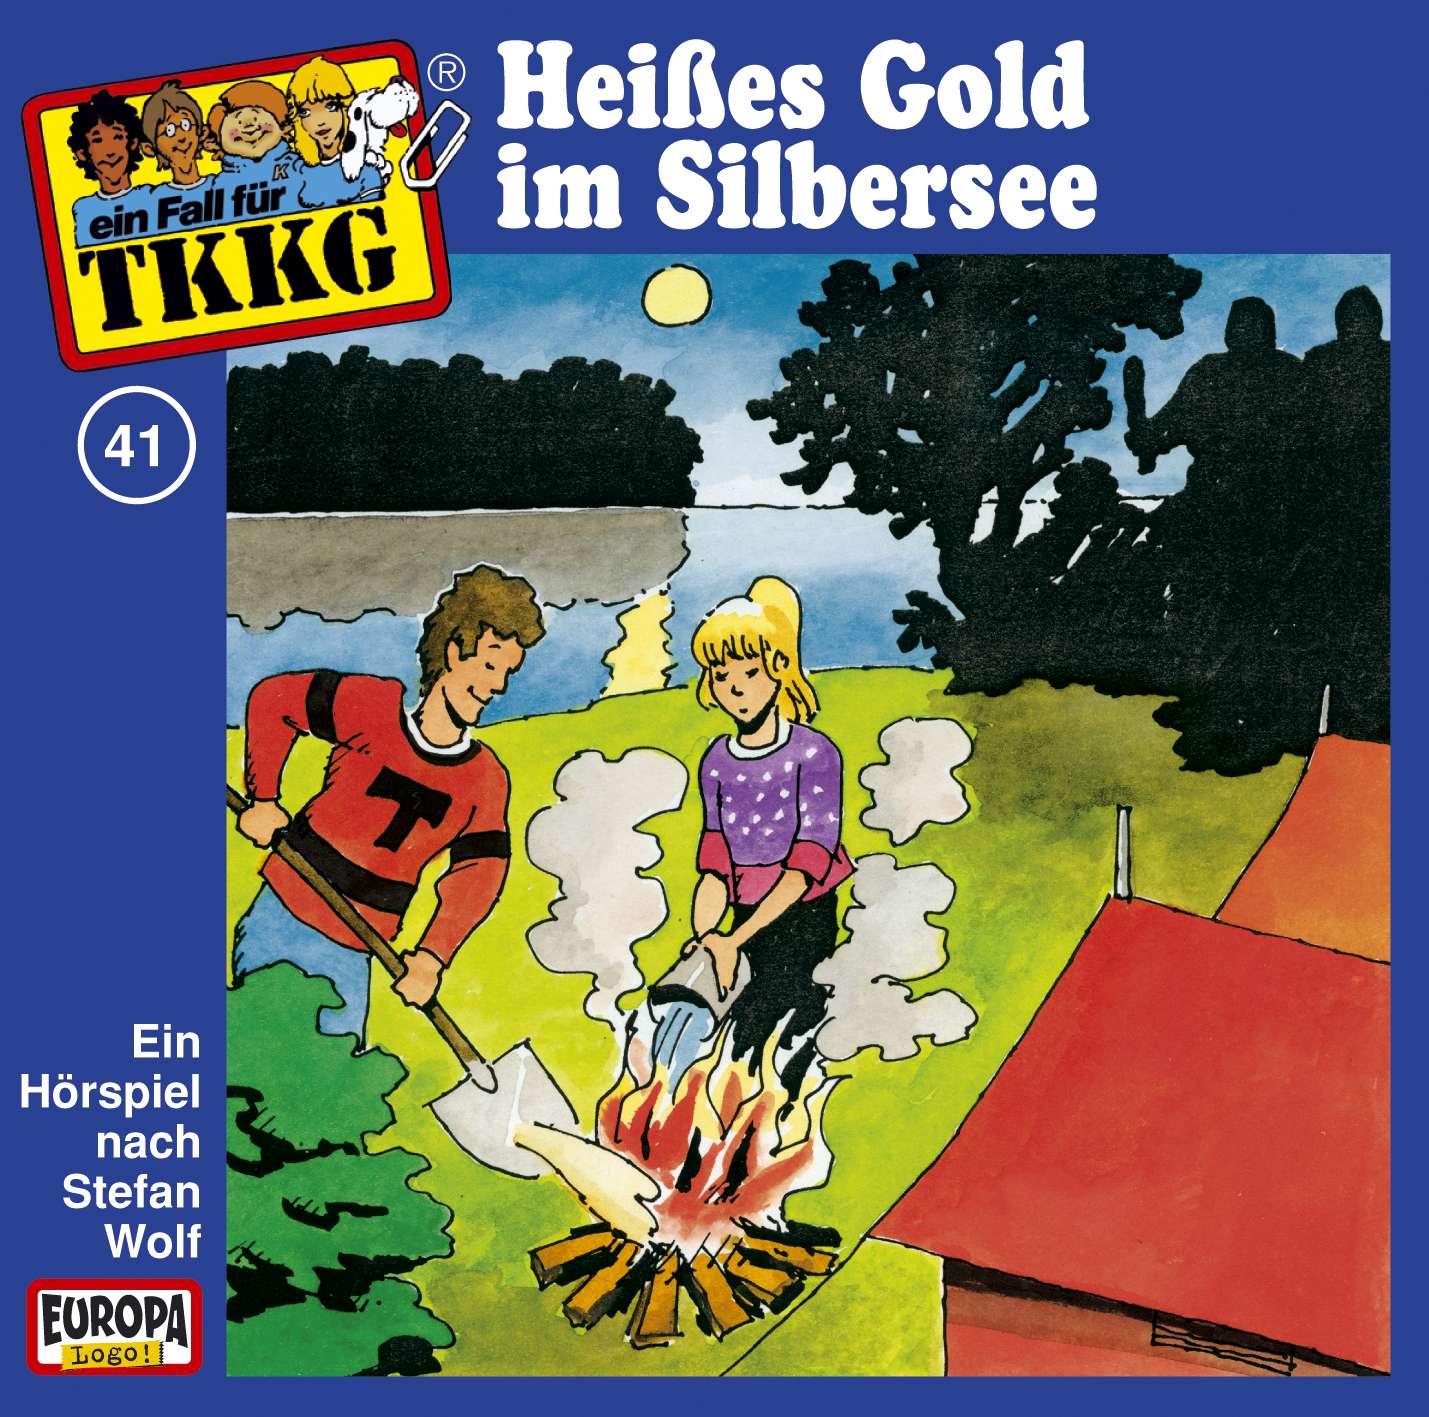 TKKG Retro-Archiv - Heißes Gold im Silbersee